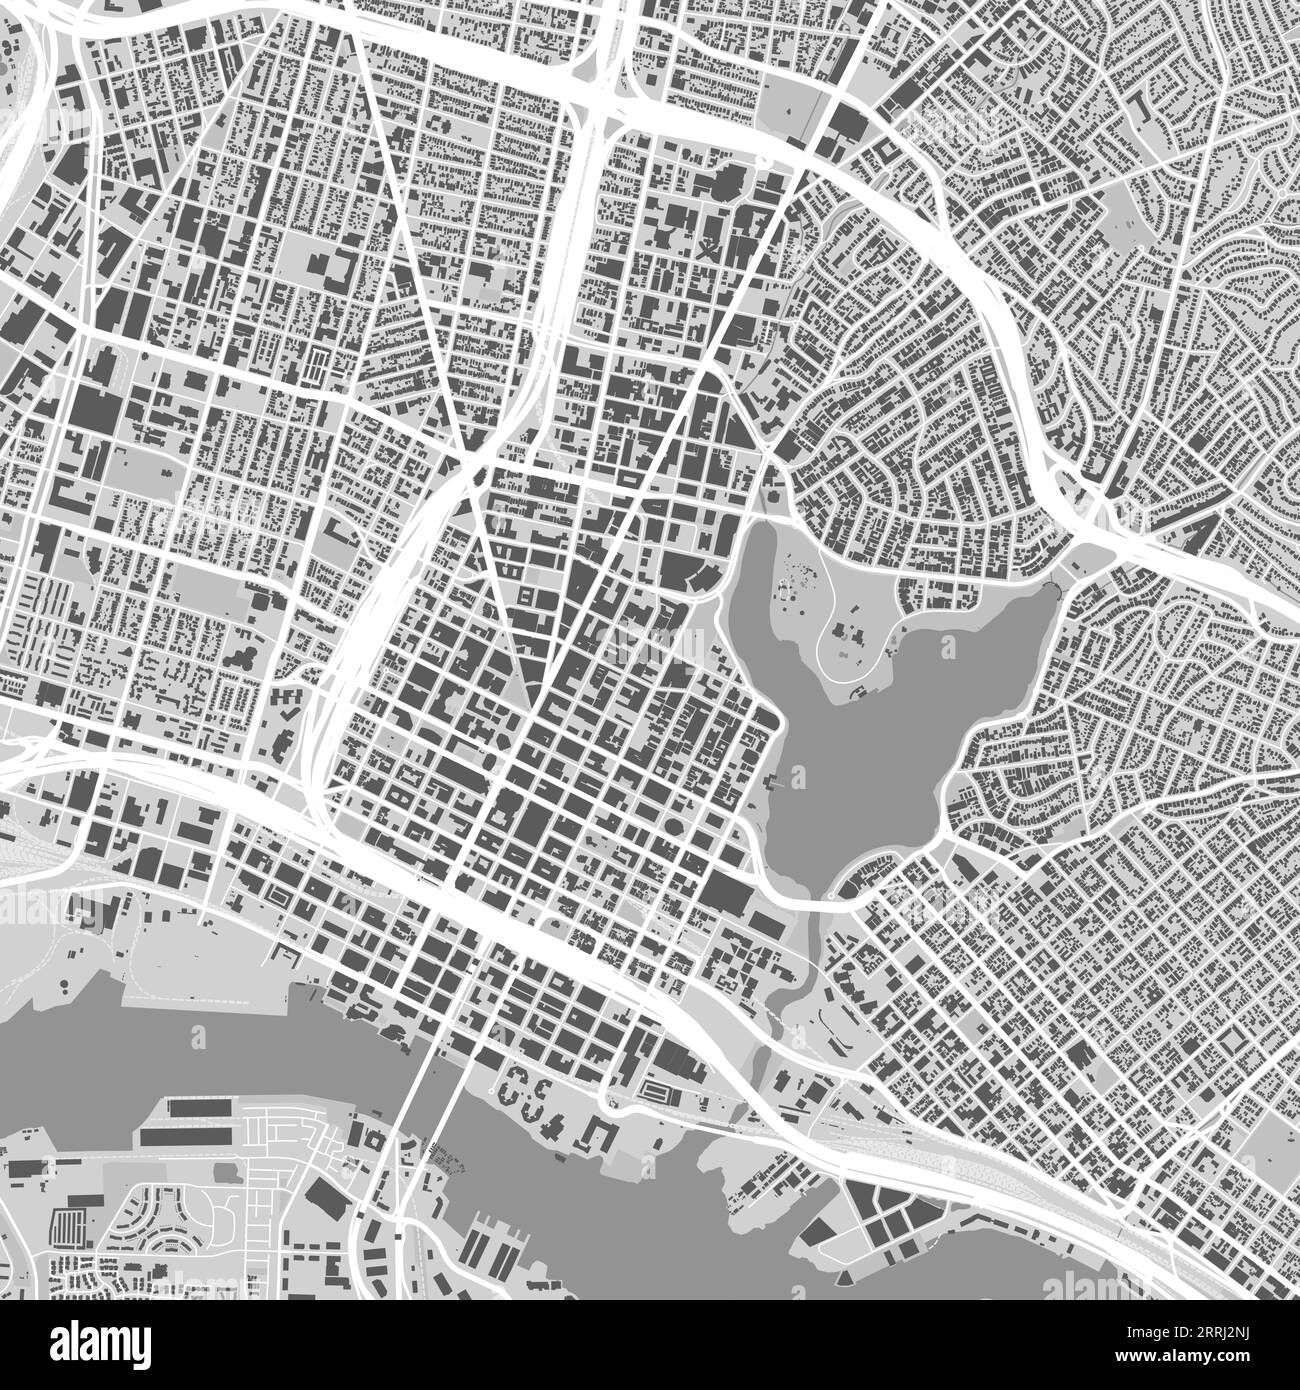 Mappa della città di Oakland, Stati Uniti. Poster urbano in bianco e nero. Immagine della mappa stradale con vista sull'area metropolitana della città. Illustrazione Vettoriale